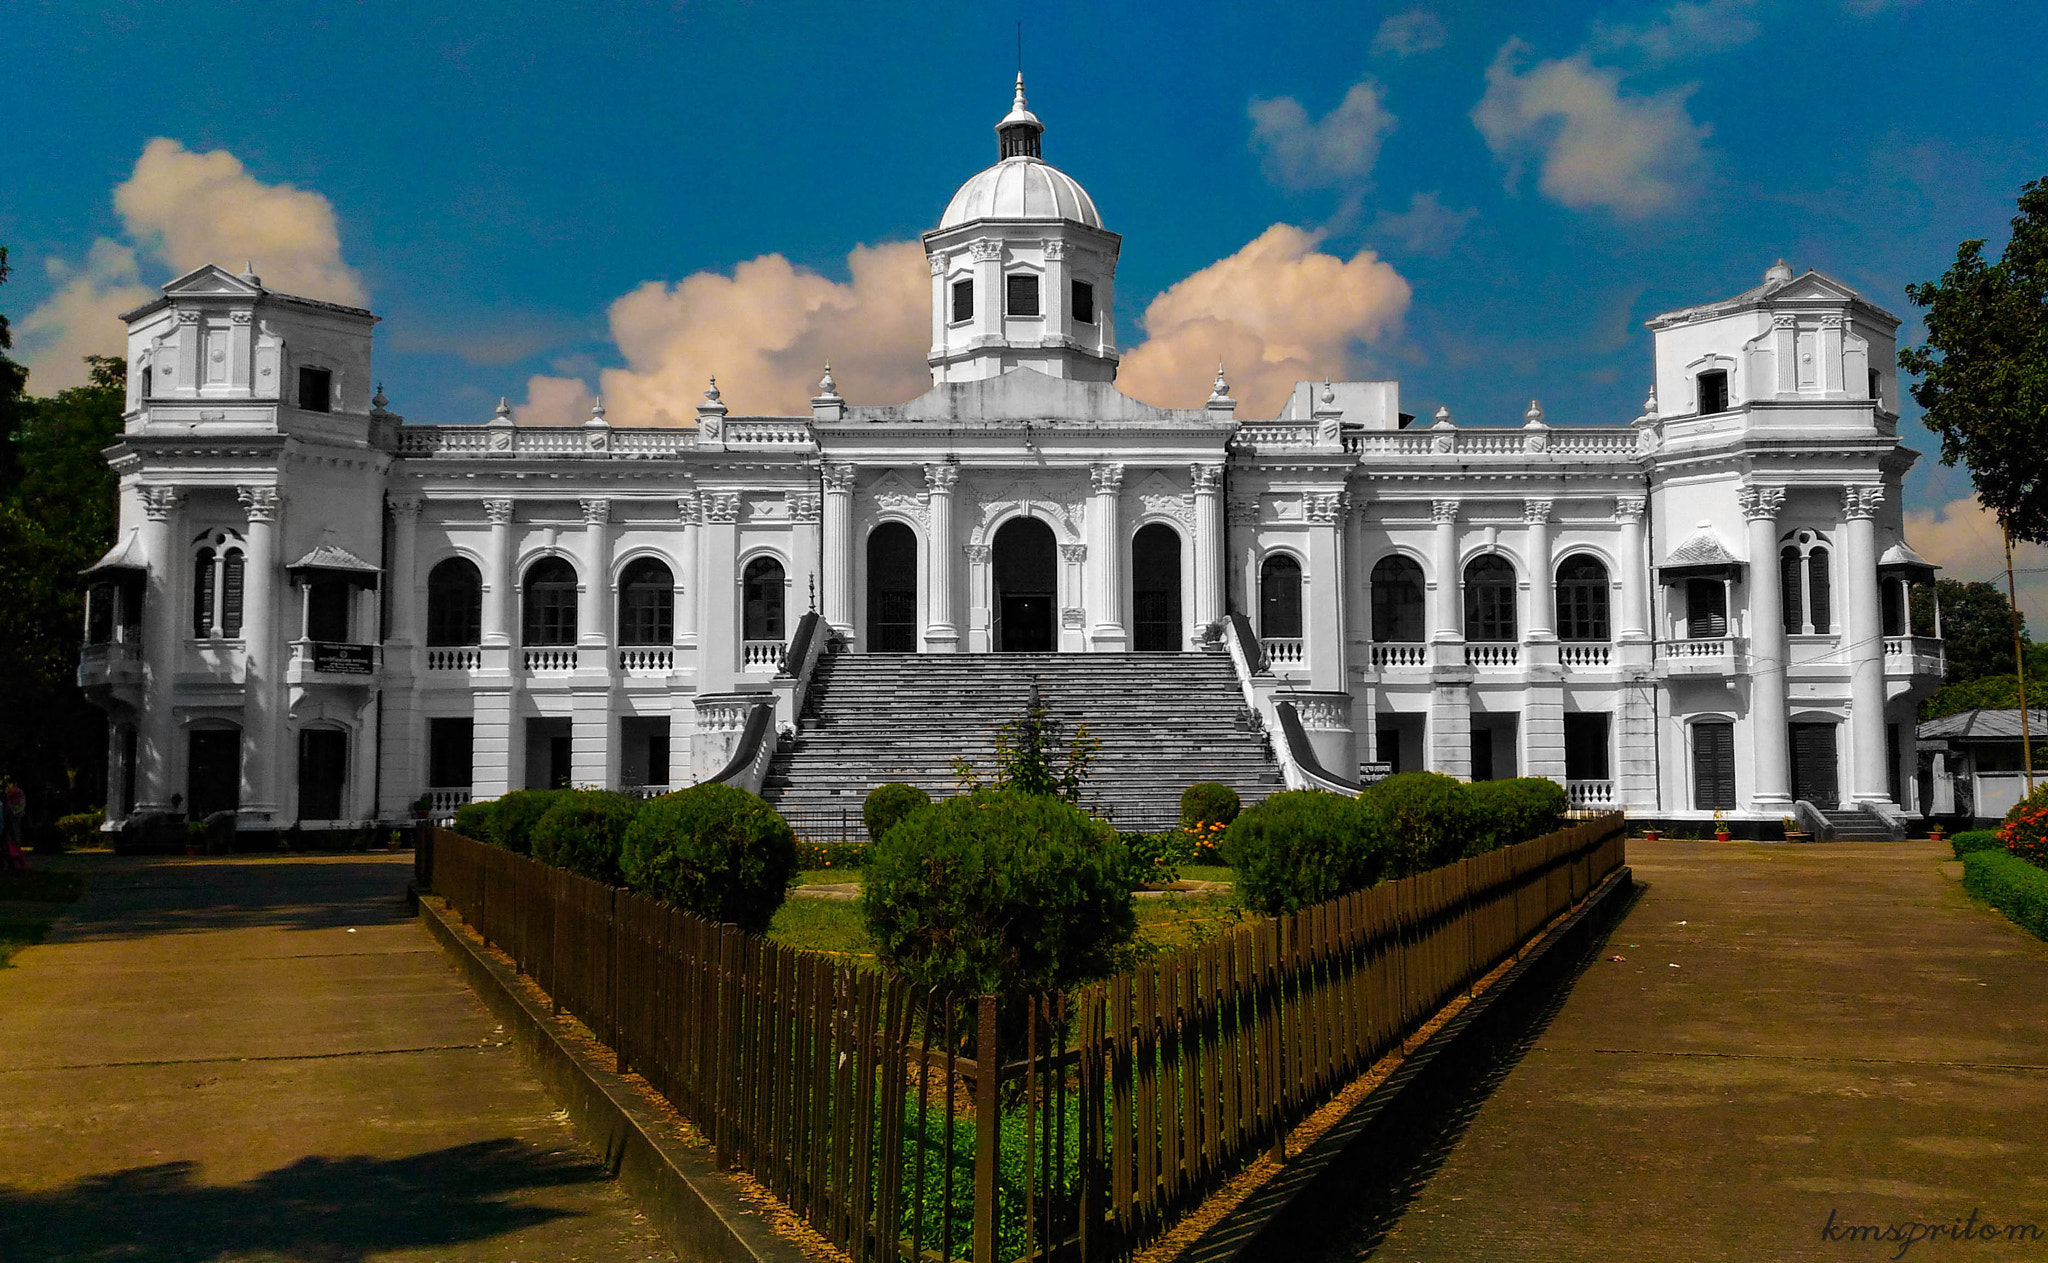 ASUS ZenFone Selfie (ZD551KL) sample photo. Tajhat palace. photography